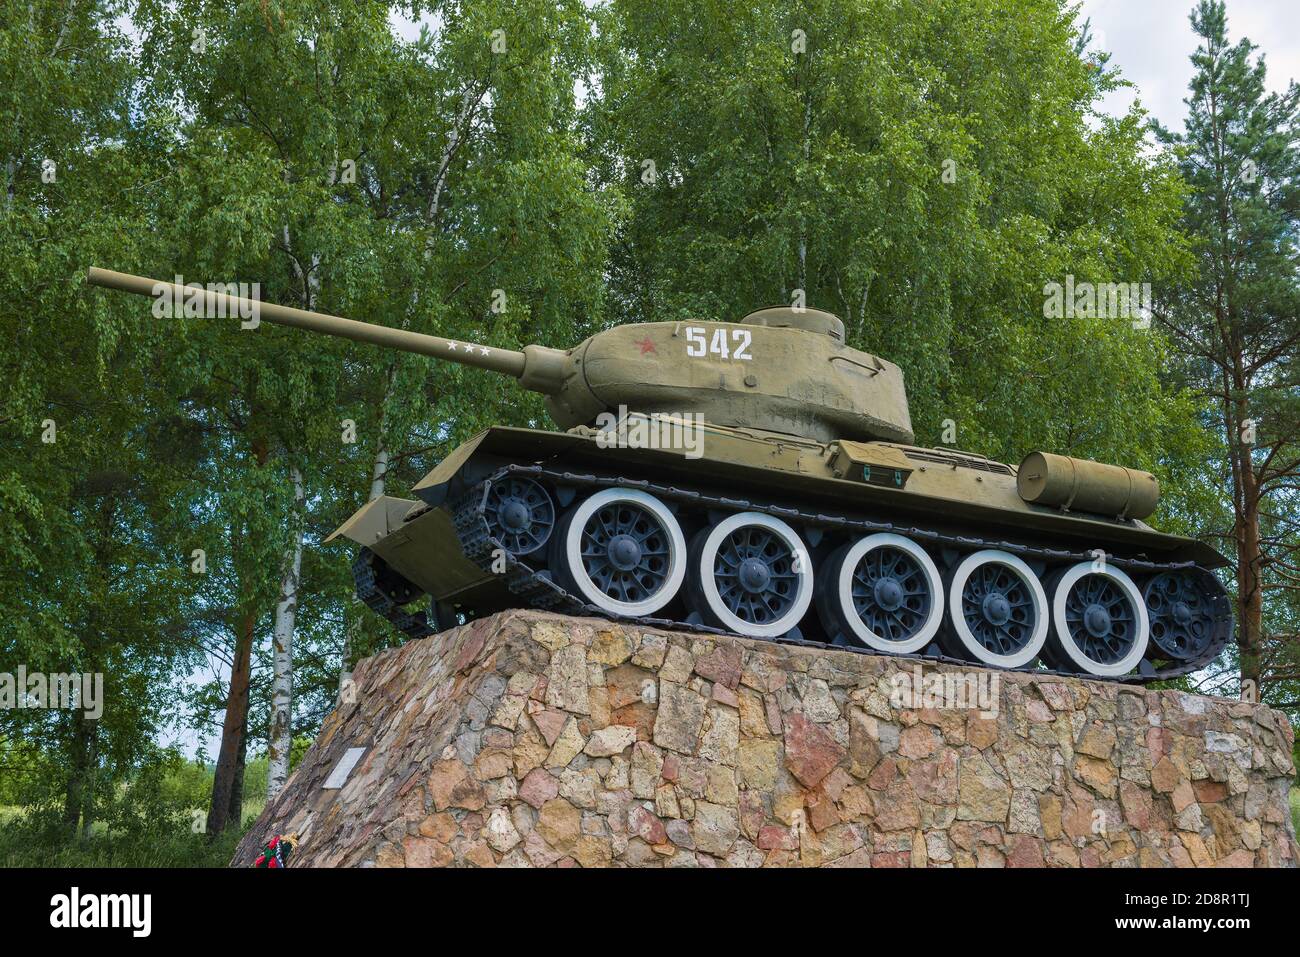 STARAYA RUSSA, RUSSLAND - 04. JULI 2020: Sowjetischer Panzer T-34-85 Nahaufnahme. Denkmal zu Ehren der Befreiung Staraja Russas von den deutschen Invasoren in Worl Stockfoto